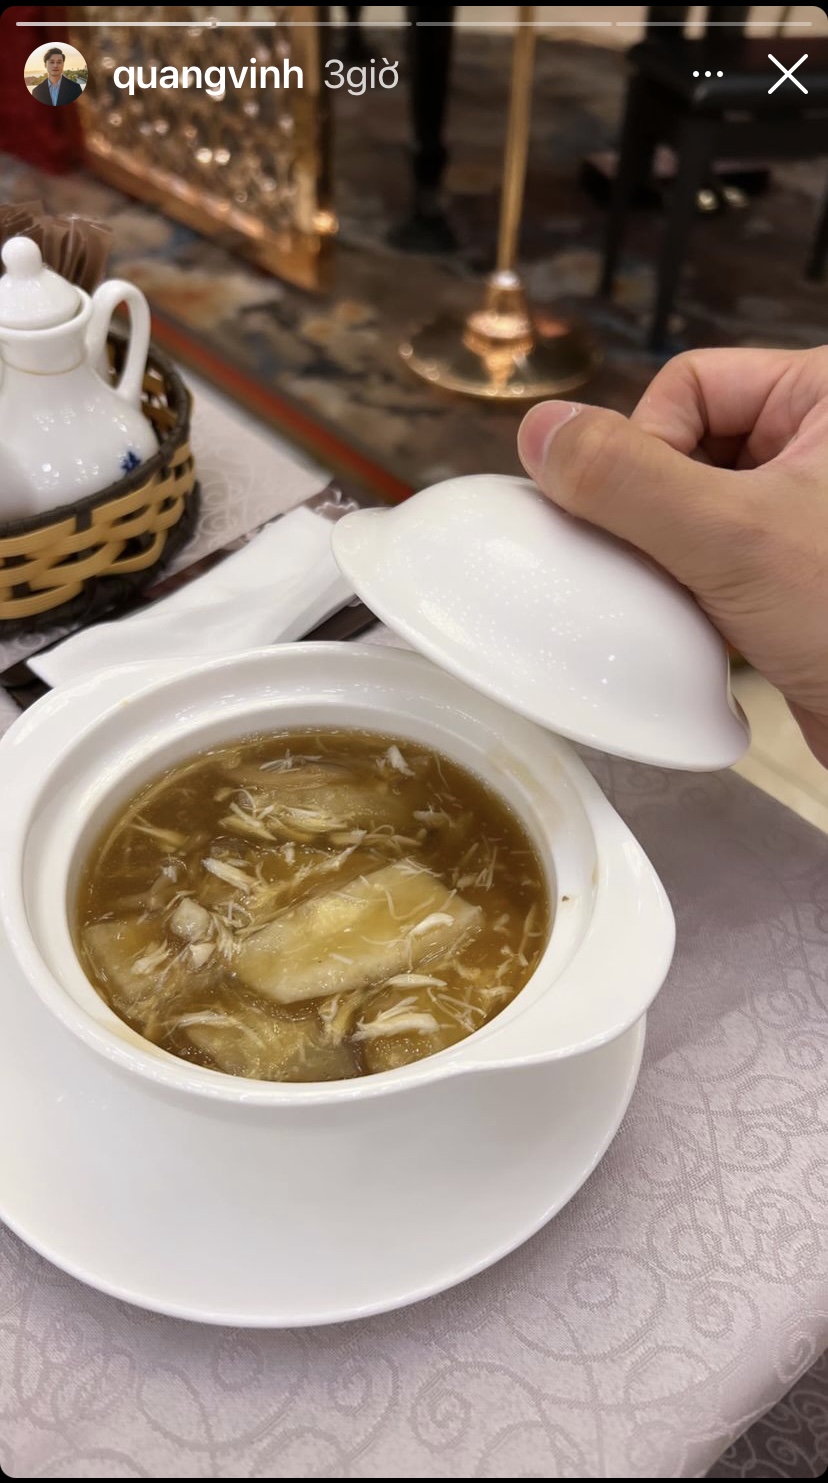 ... Quang Vinh còn chia sẻ món súp thơm ngon, bổ dưỡng trên bàn ăn ngày thứ hai đầu tuần của mình.